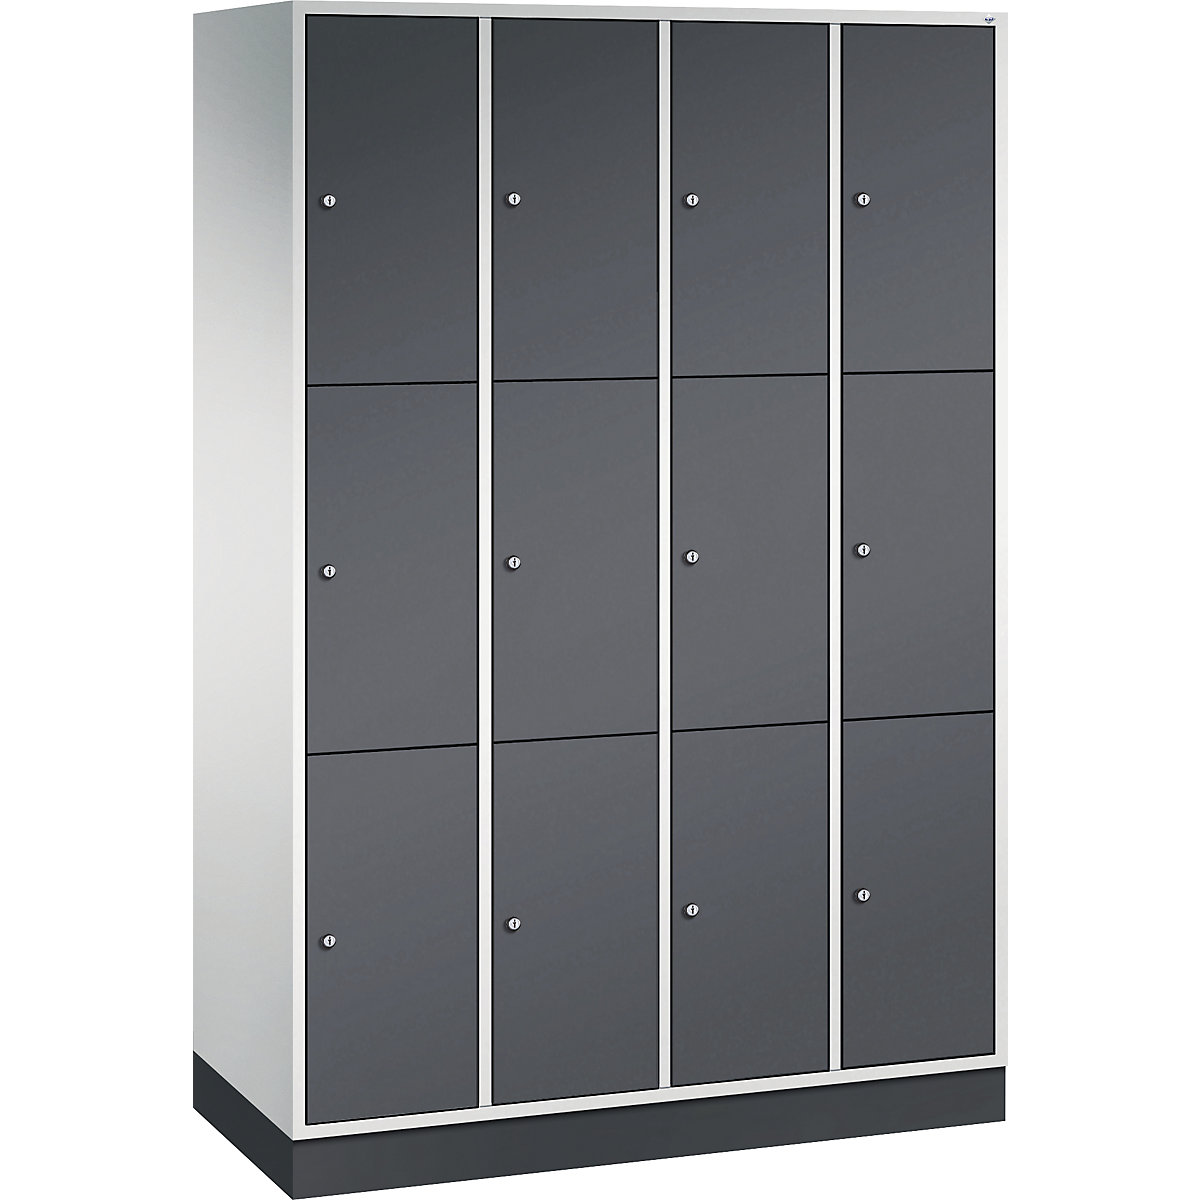 Vestiaire multicases en acier INTRO, casiers hauteur 580 mm – C+P, l x p 1220 x 500 mm, 12 casiers, corps gris clair, portes gris noir-15